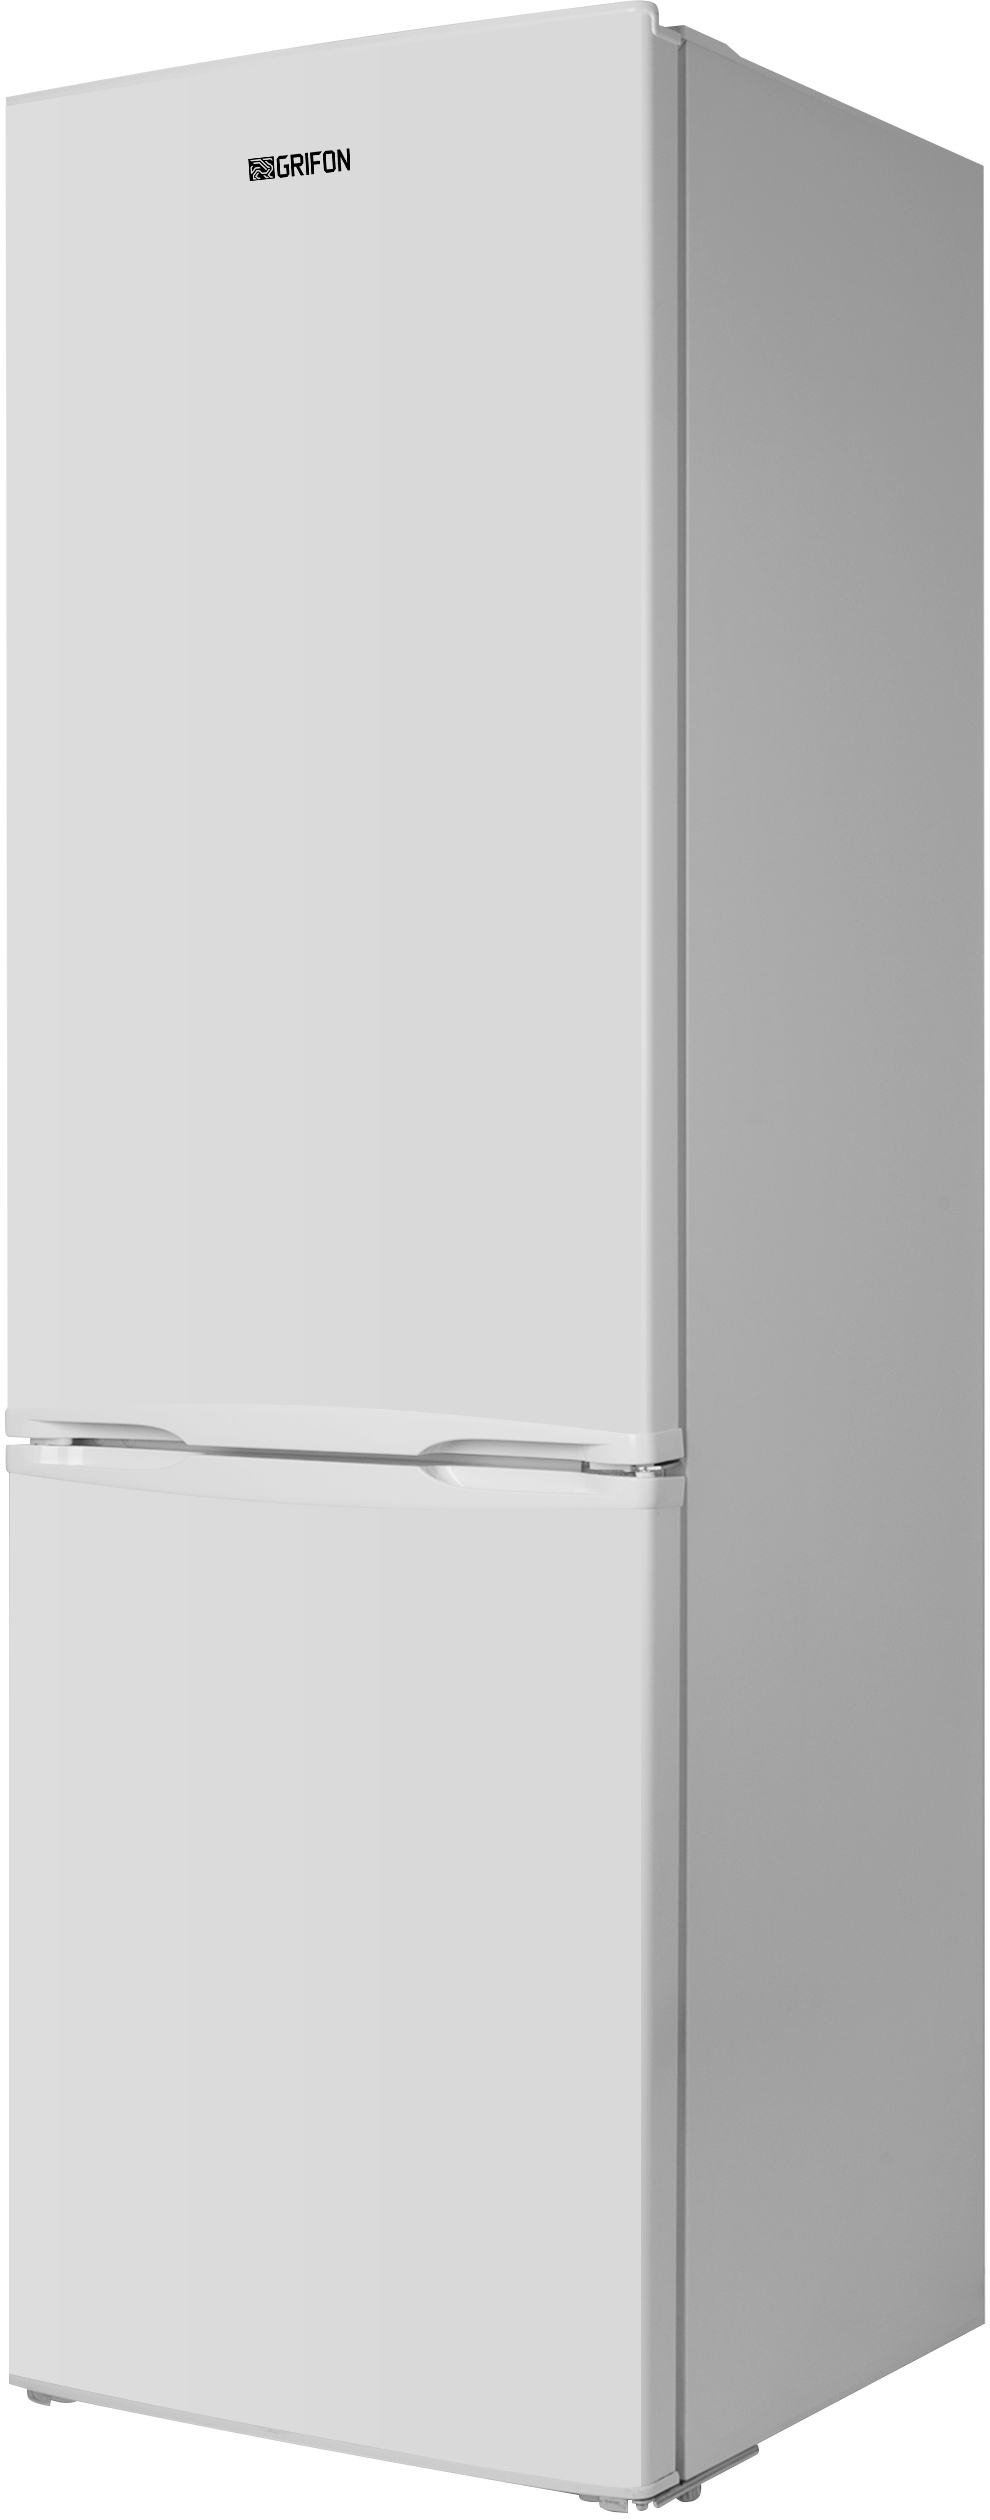 Холодильник Grifon DFN-185W внешний вид - фото 9